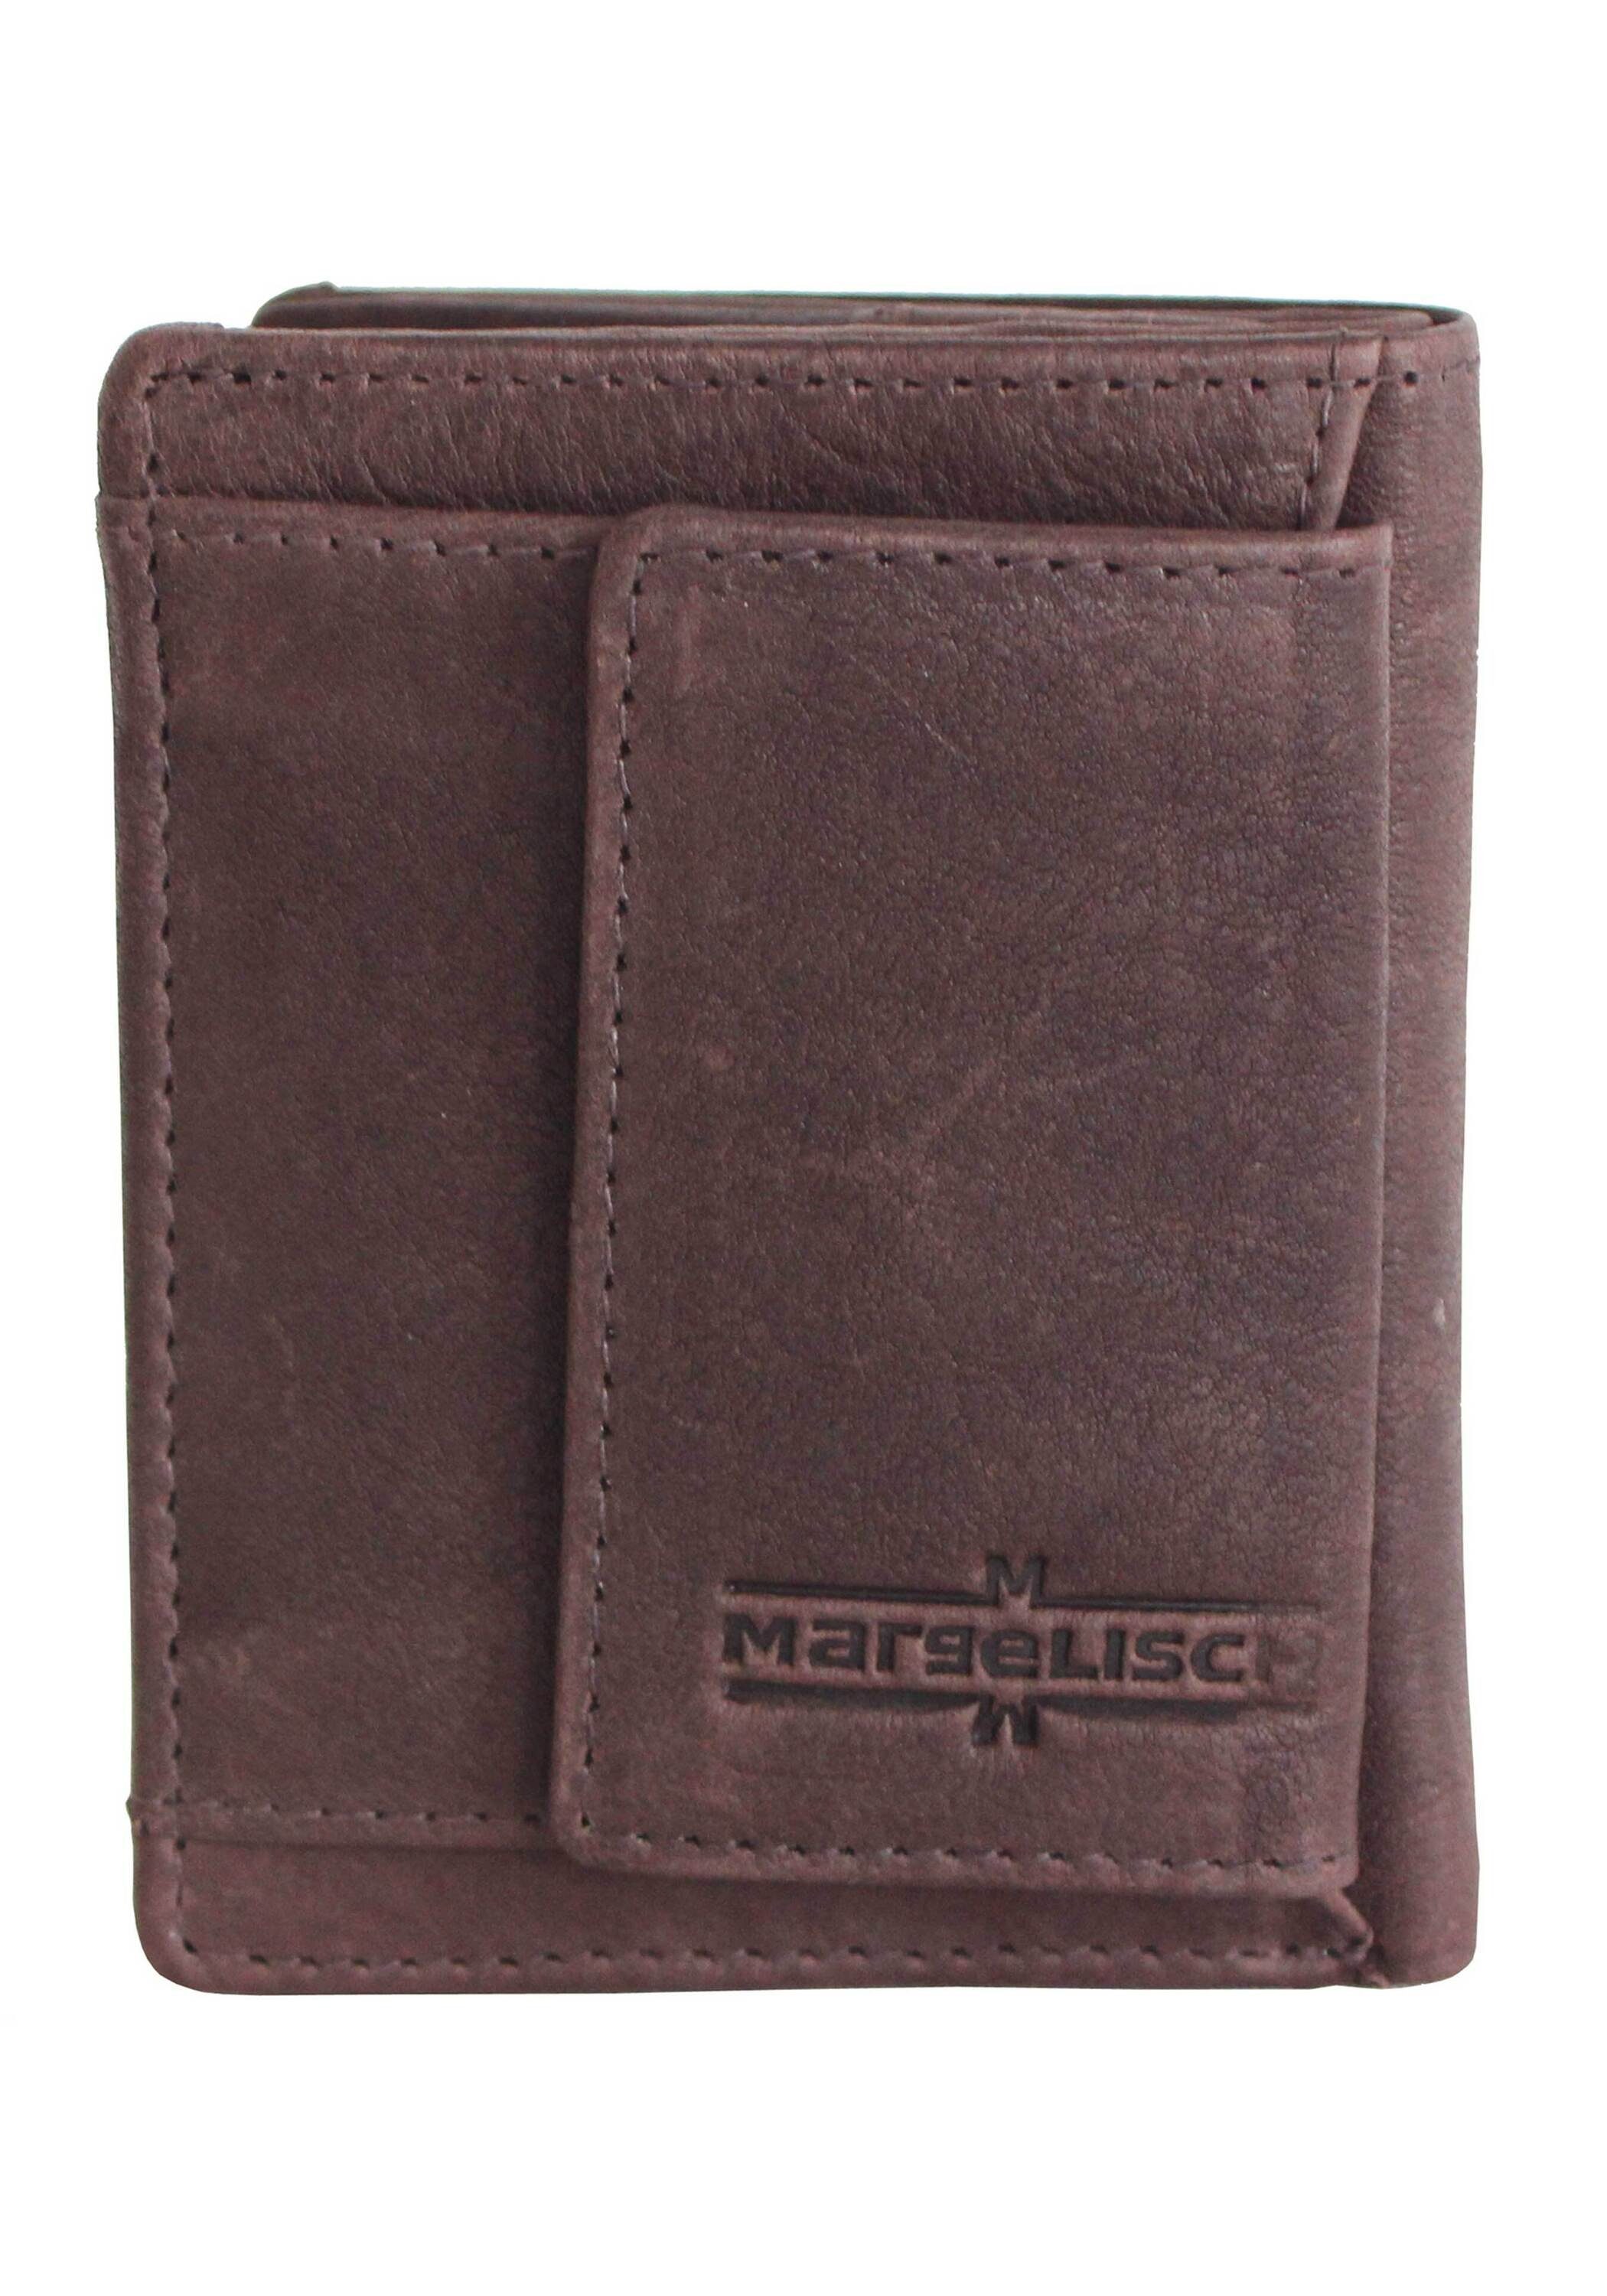 Produktion Margelisch 1, aus Mini fairer und Barcelona brown RFID Geldbörse Schutz mit